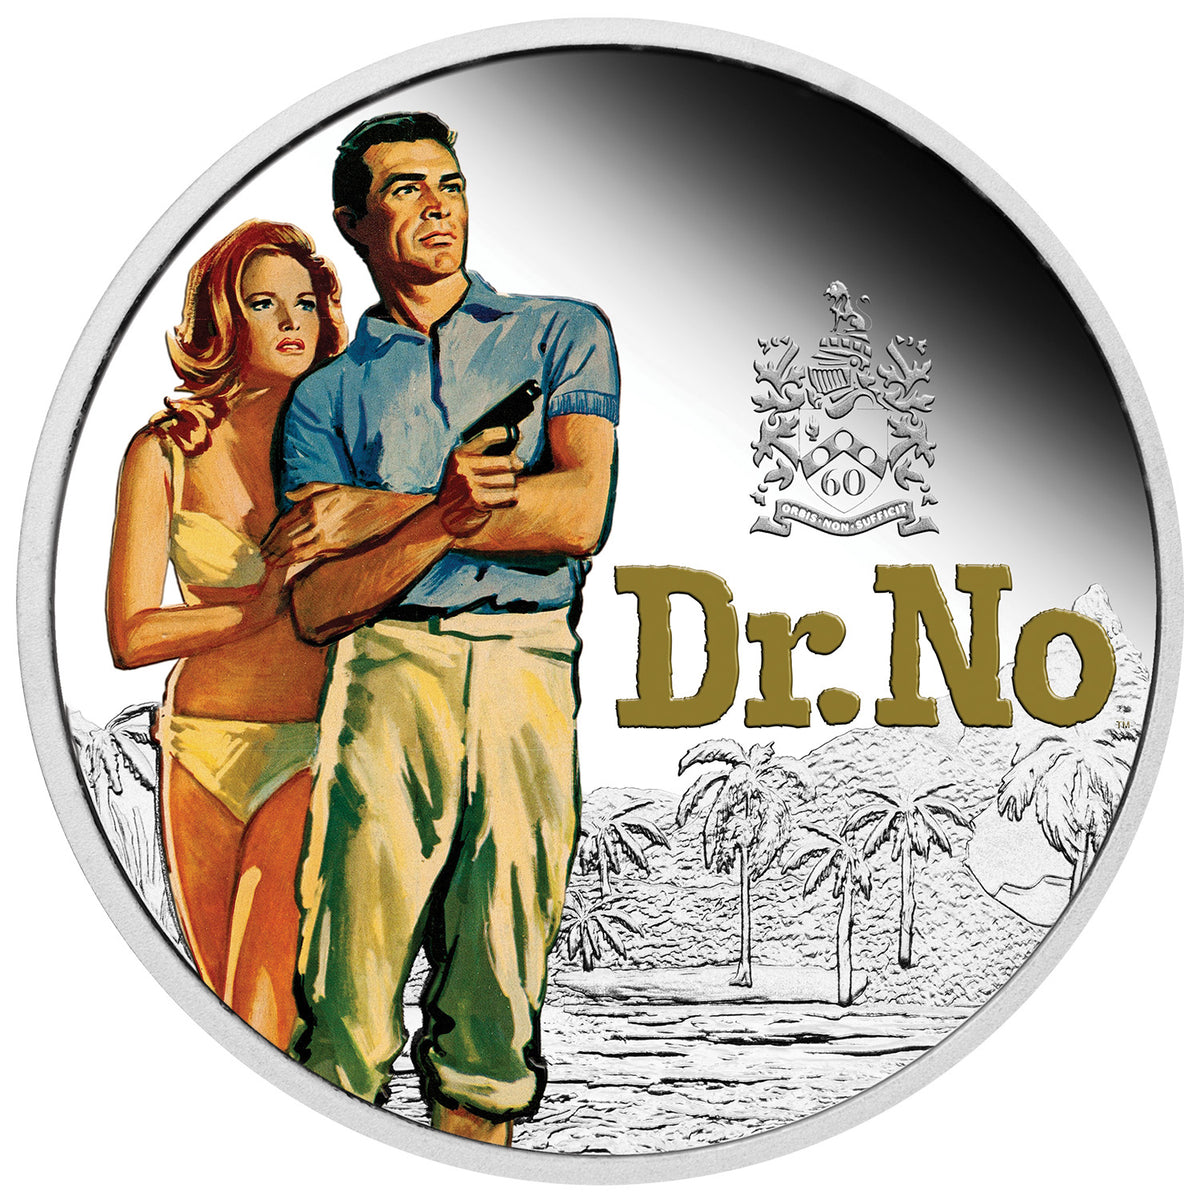 James Bond 1 oz Silbermünze in Proof-Farbe – Dr. No 60. Jubiläumsausgabe, nummeriert – von der Perth Mint